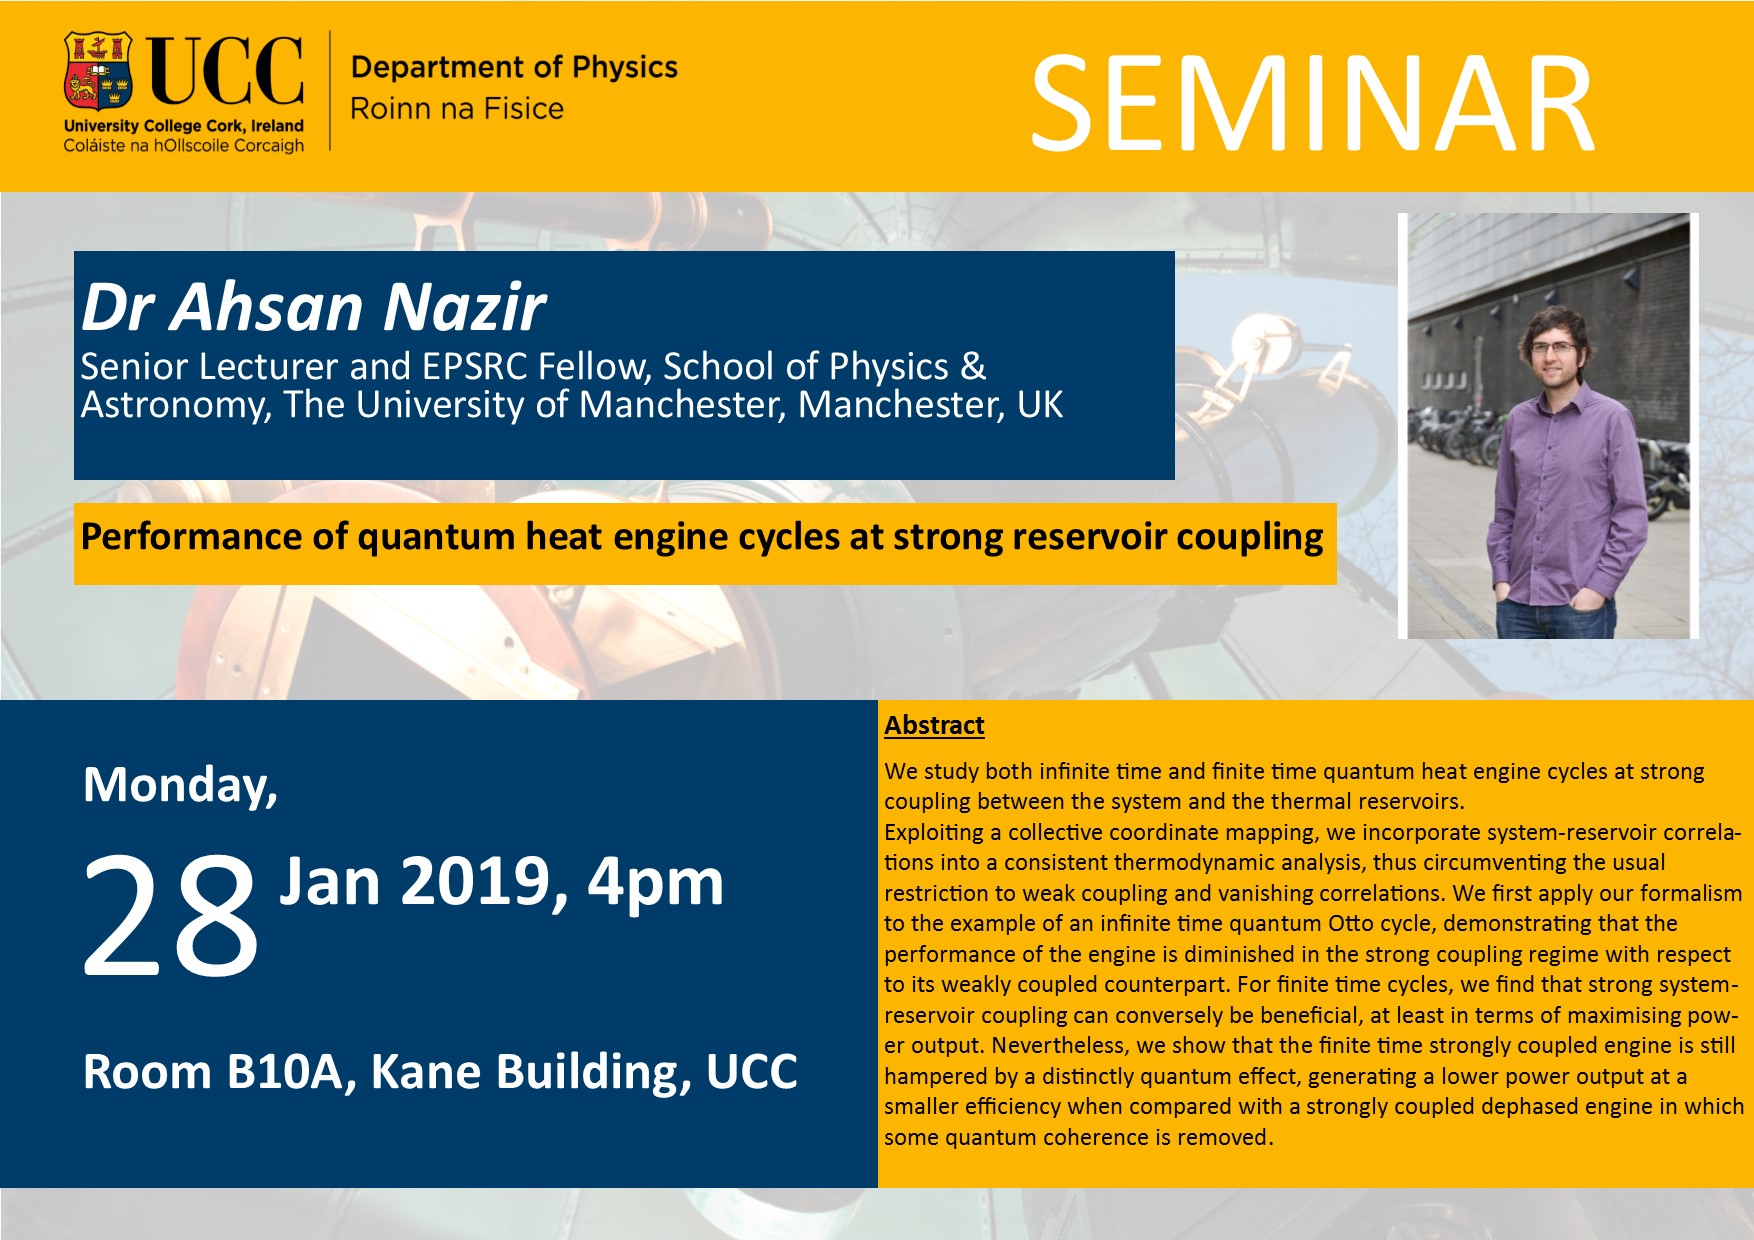 28 Jan 2019 Dr Ahsan Nazir Seminar Poster